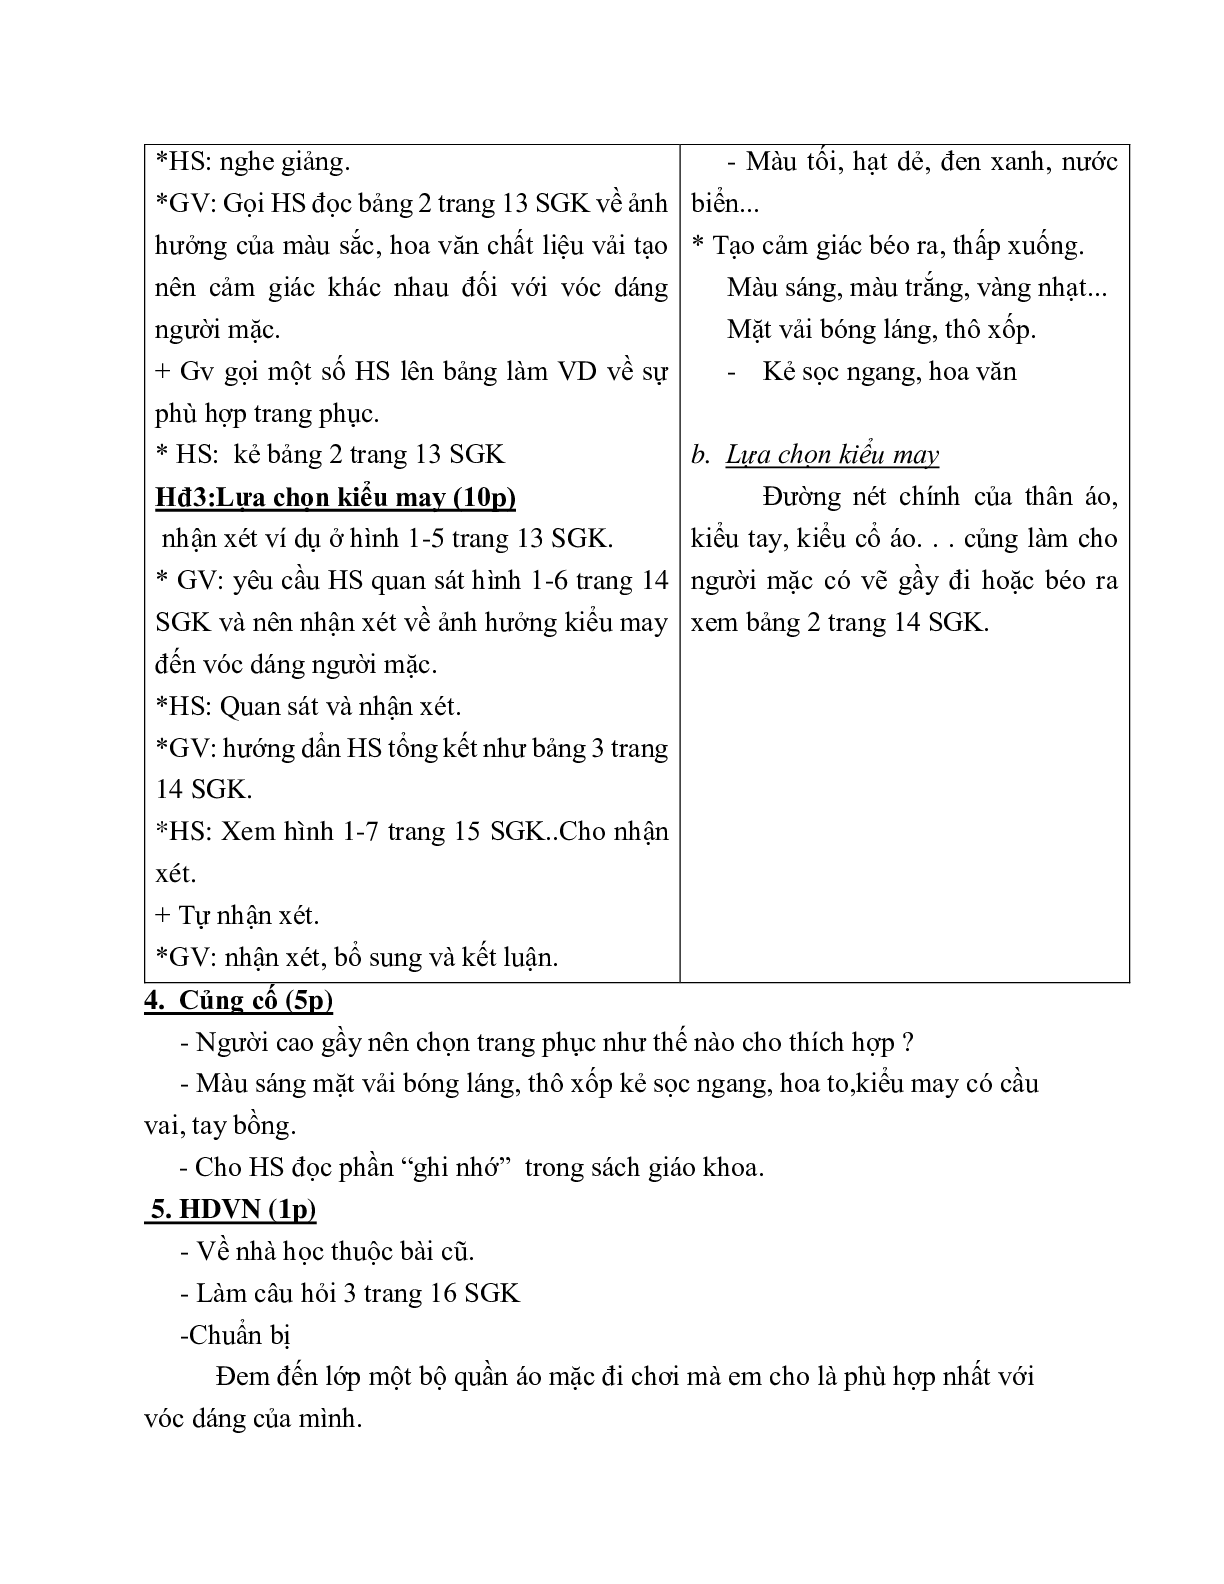 GIÁO ÁN CÔNG NGHỆ 6 BÀI 2: LỰA CHỌN TRANG PHỤC (T2) MỚI NHẤT – CV5555 (trang 3)